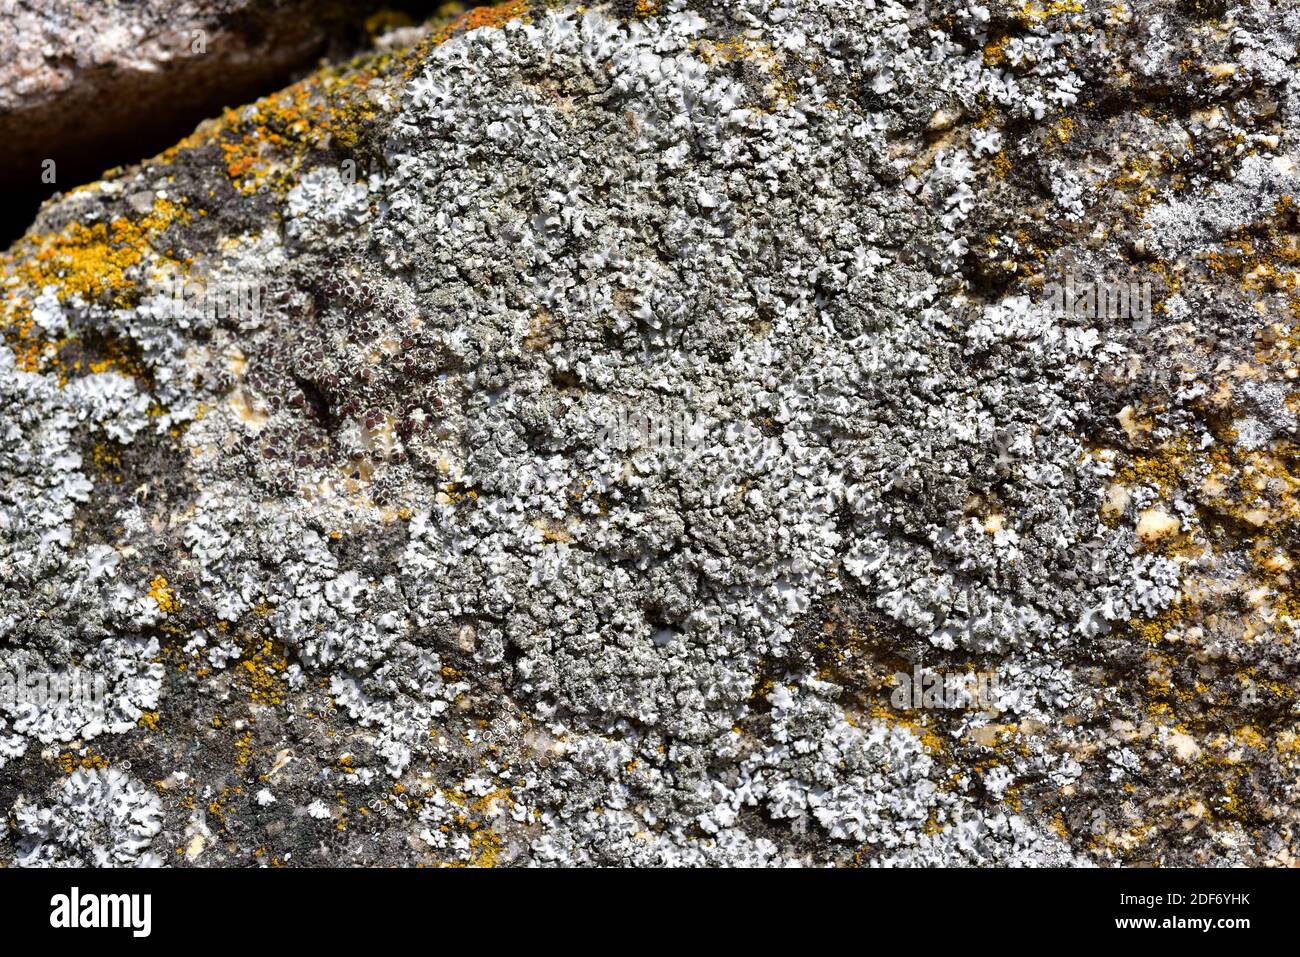 Parmelia subrudetta o Punctelia subrudetta es un liquen folioso con soralia. Esta foto fue tomada en el Parque Natural Arribes del Duero, Zamora Foto de stock